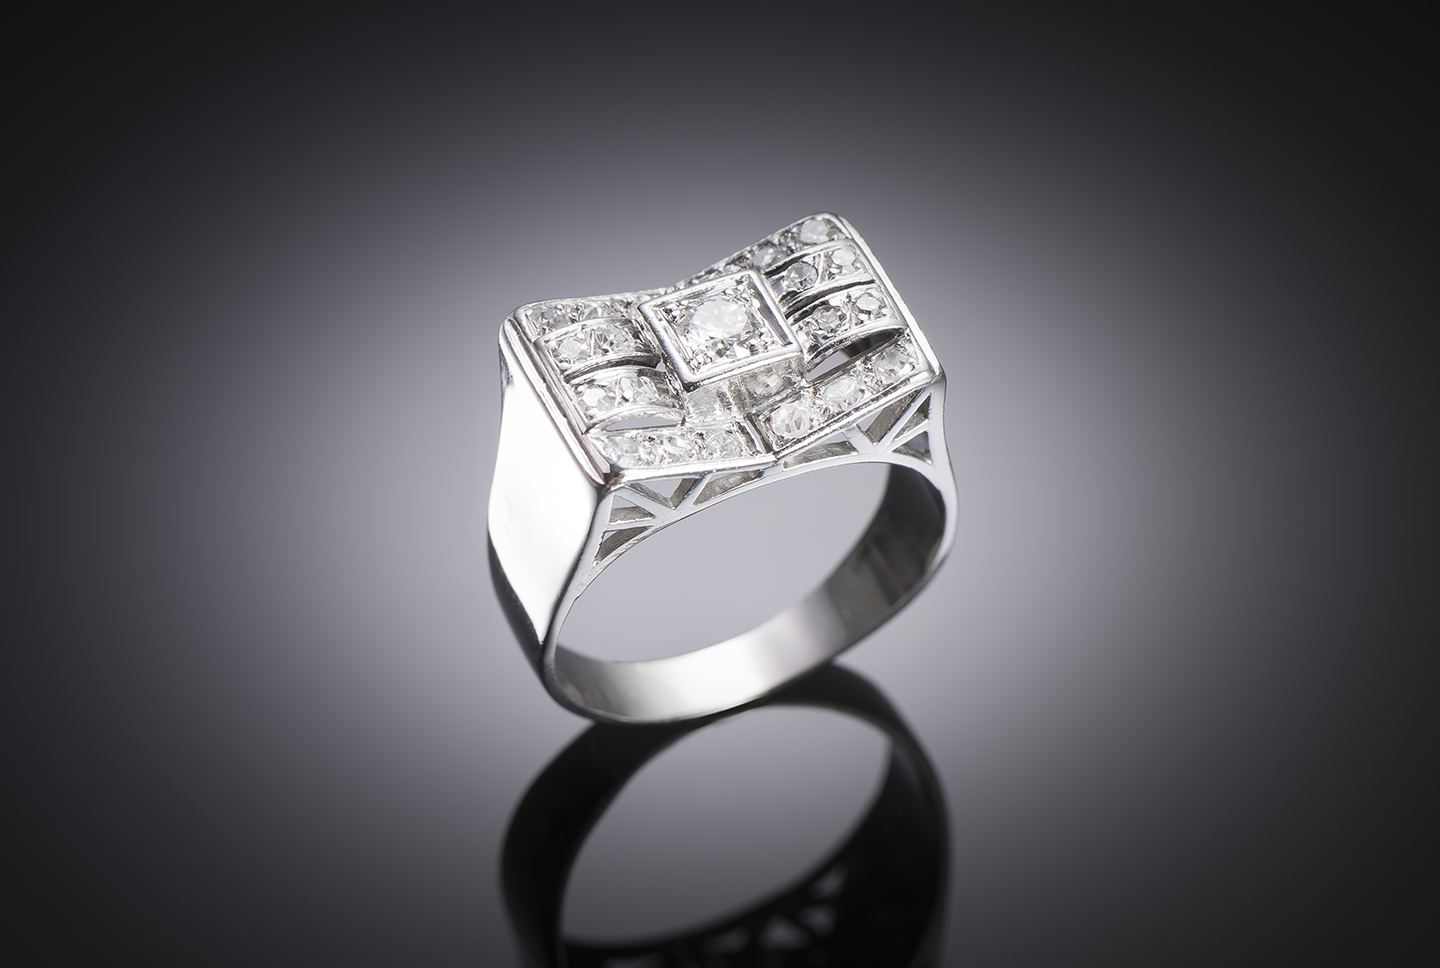 Bague moderniste diamants (1 carat). Travail français vers 1935.-1